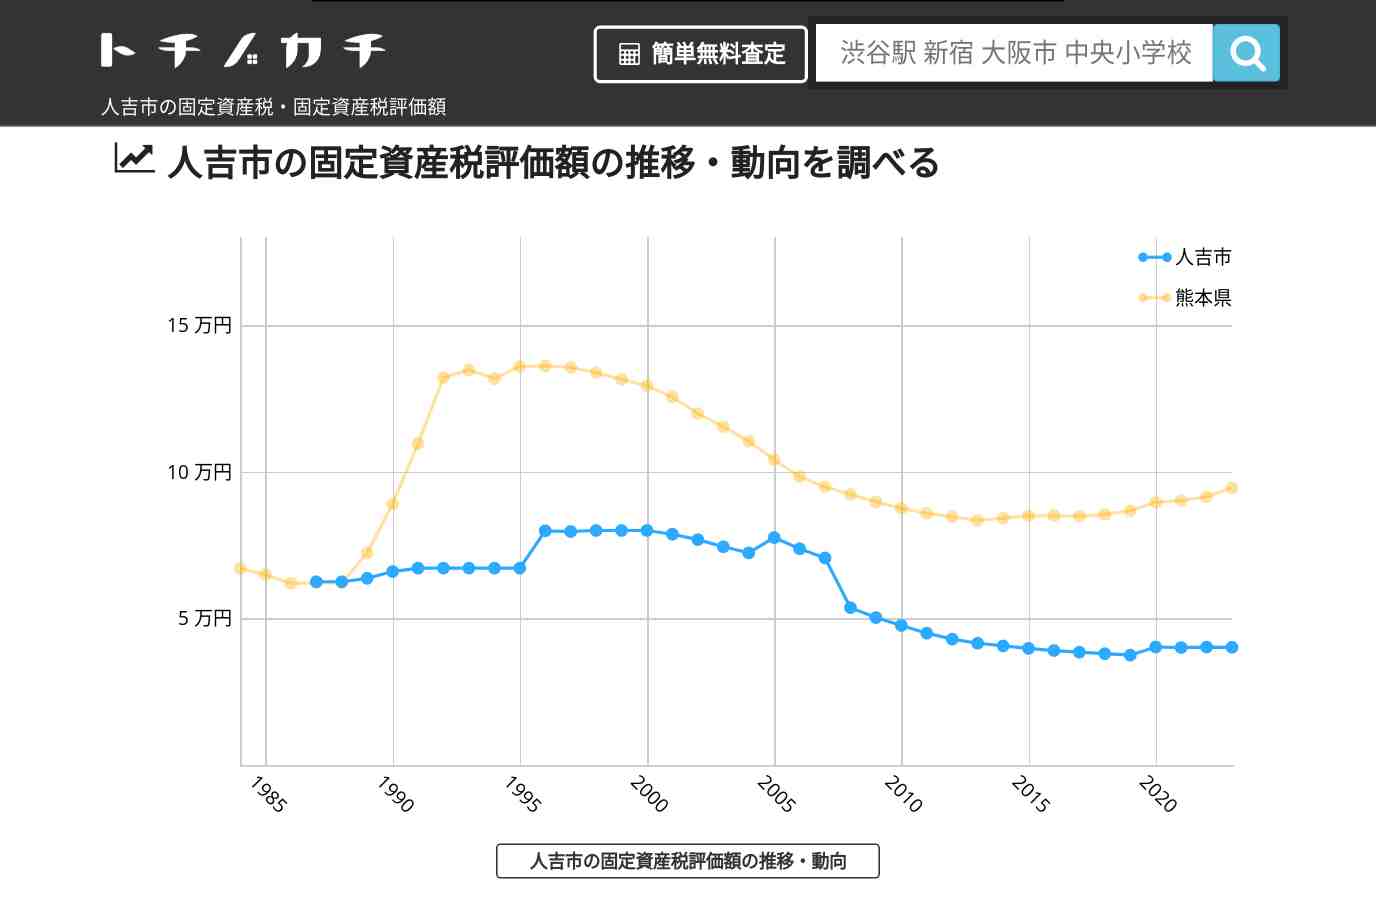 中原小学校(熊本県 人吉市)周辺の固定資産税・固定資産税評価額 | トチノカチ